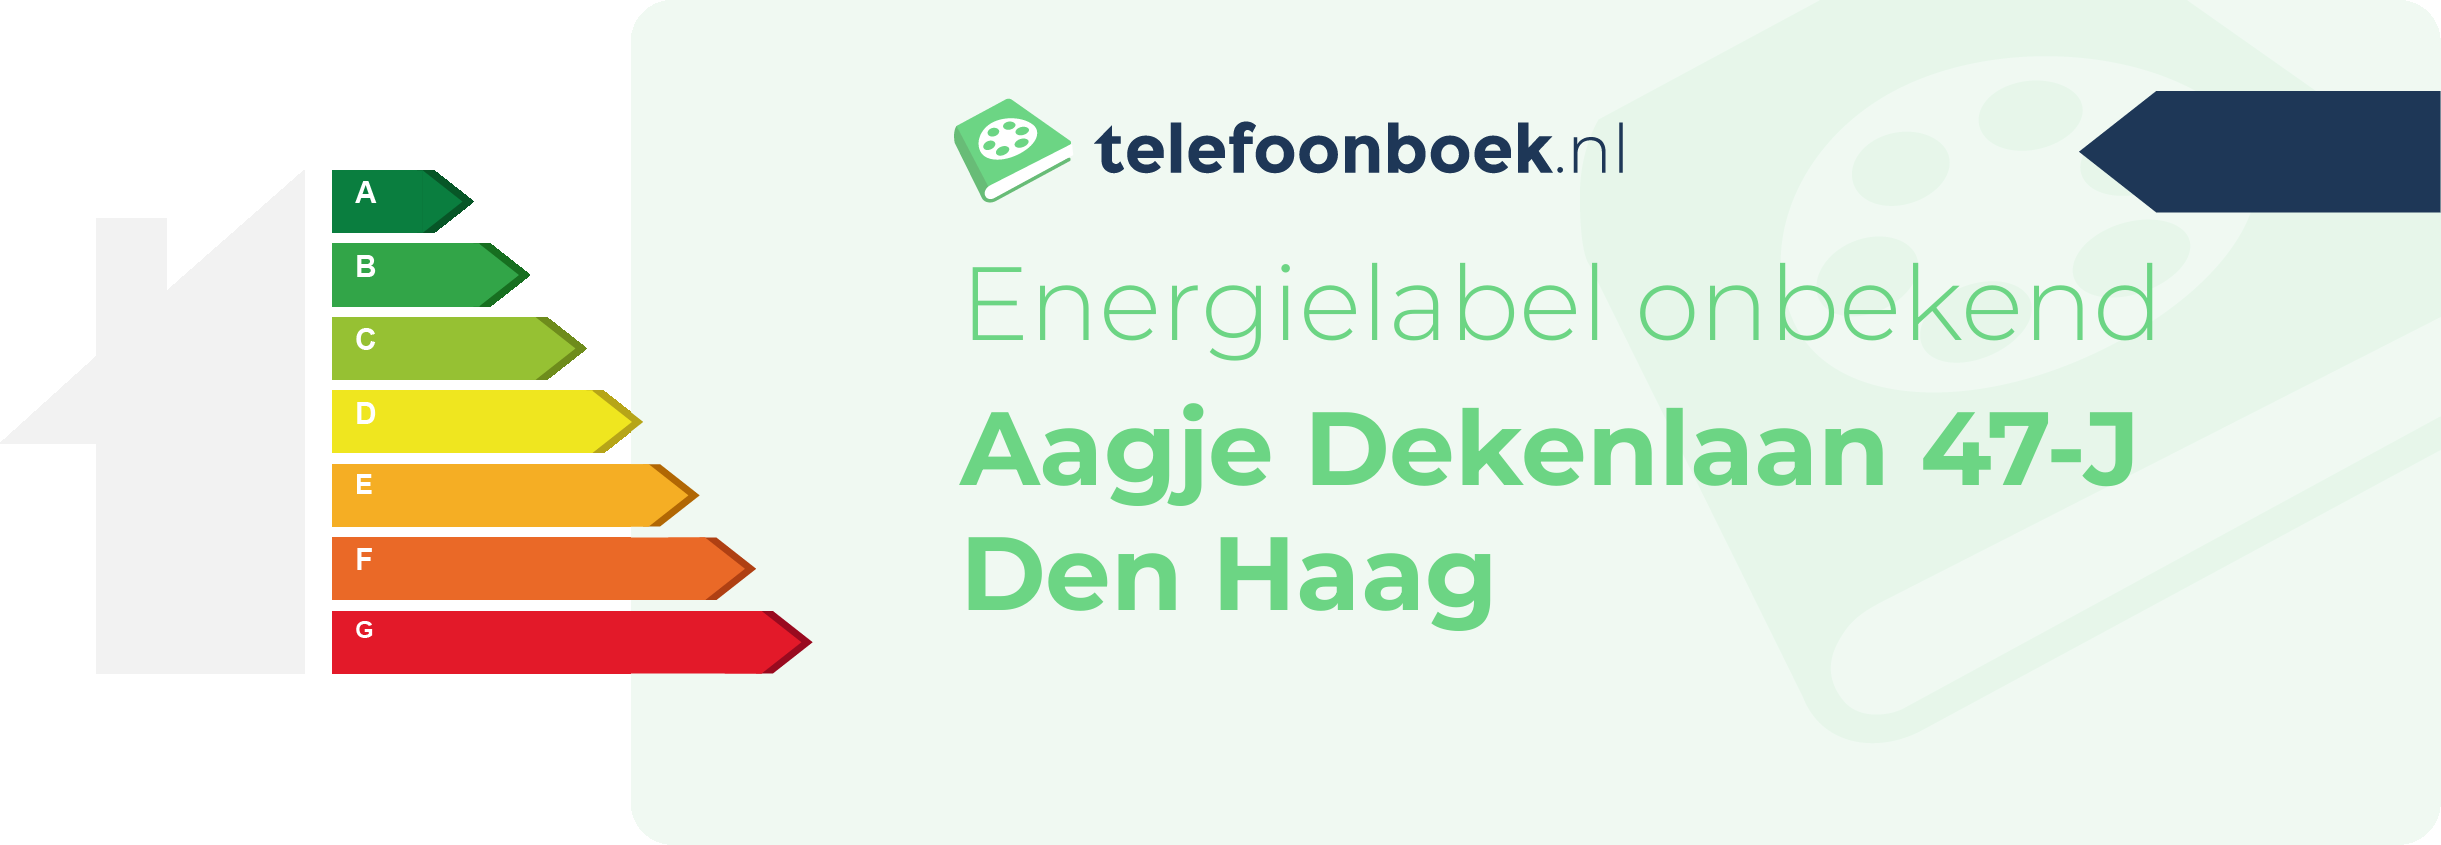 Energielabel Aagje Dekenlaan 47-J Den Haag